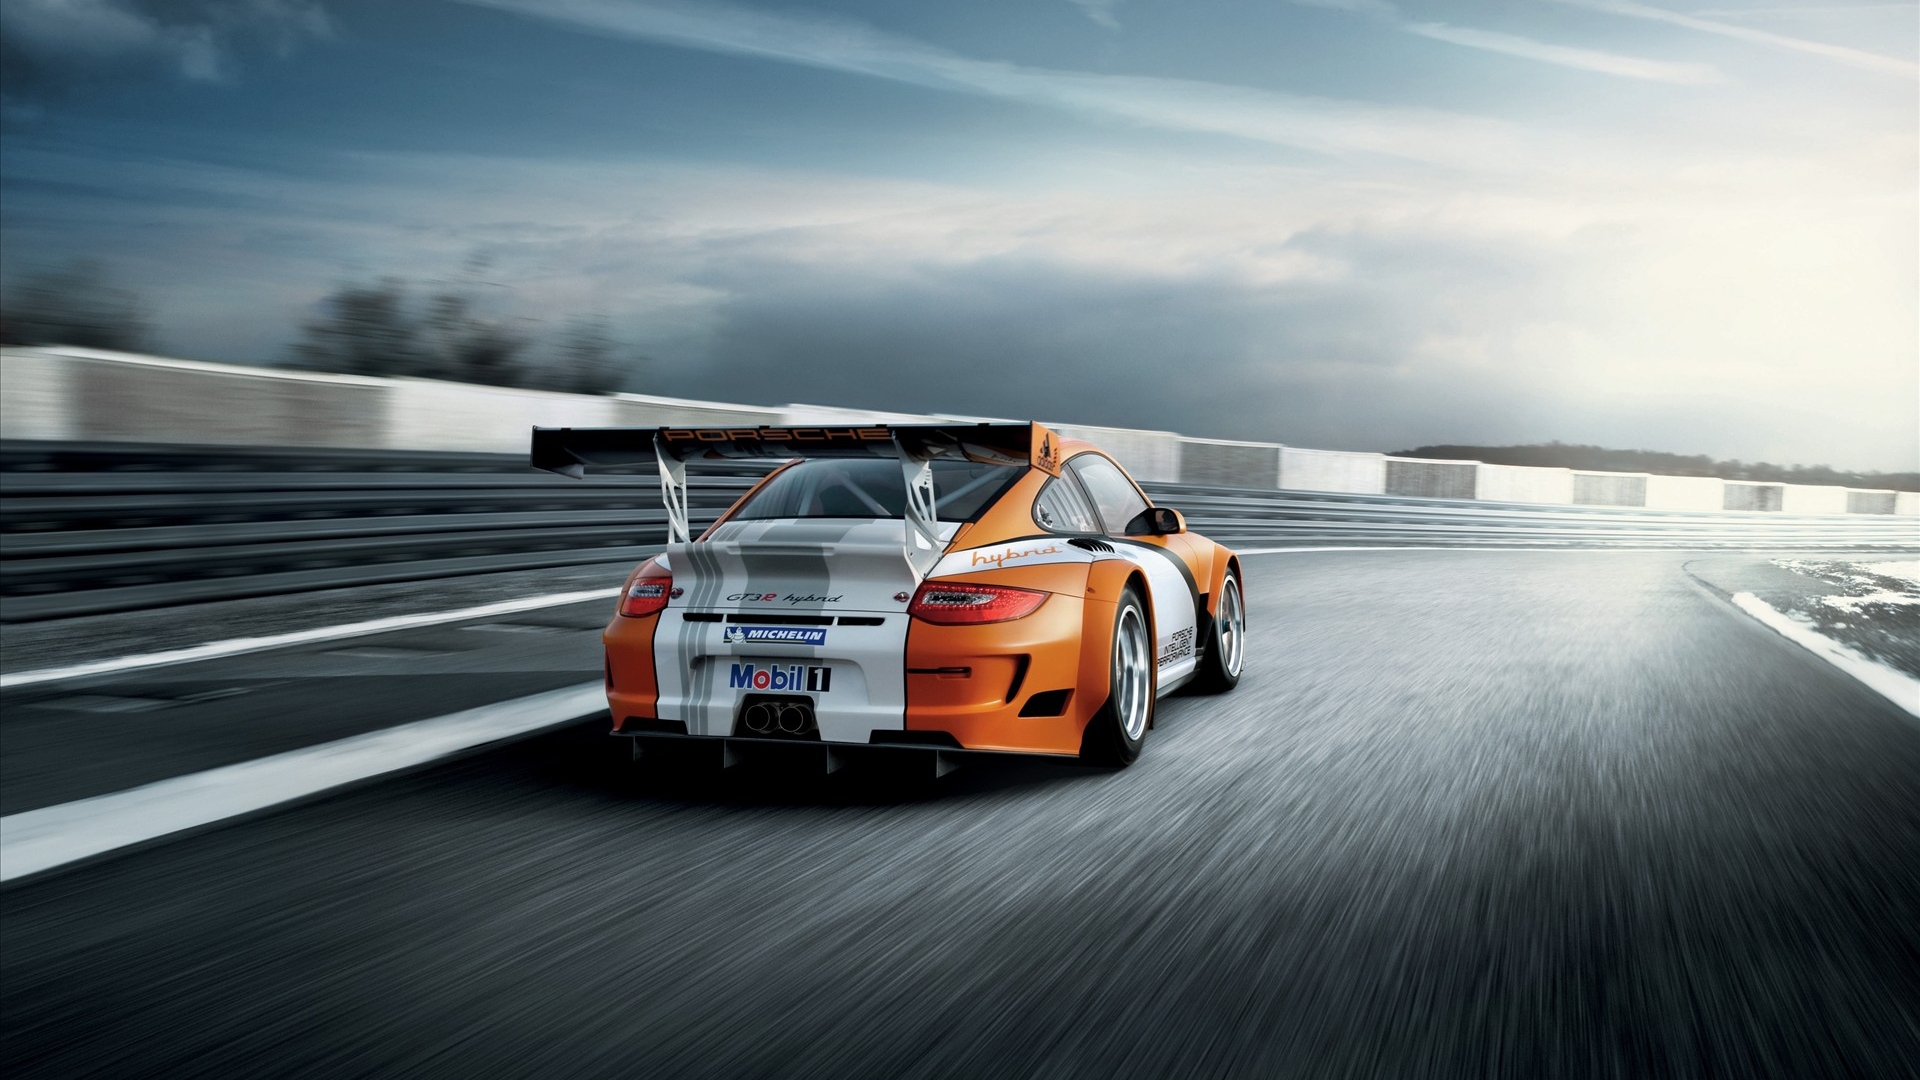 Télécharger des fonds d'écran Porsche Gt3R HD